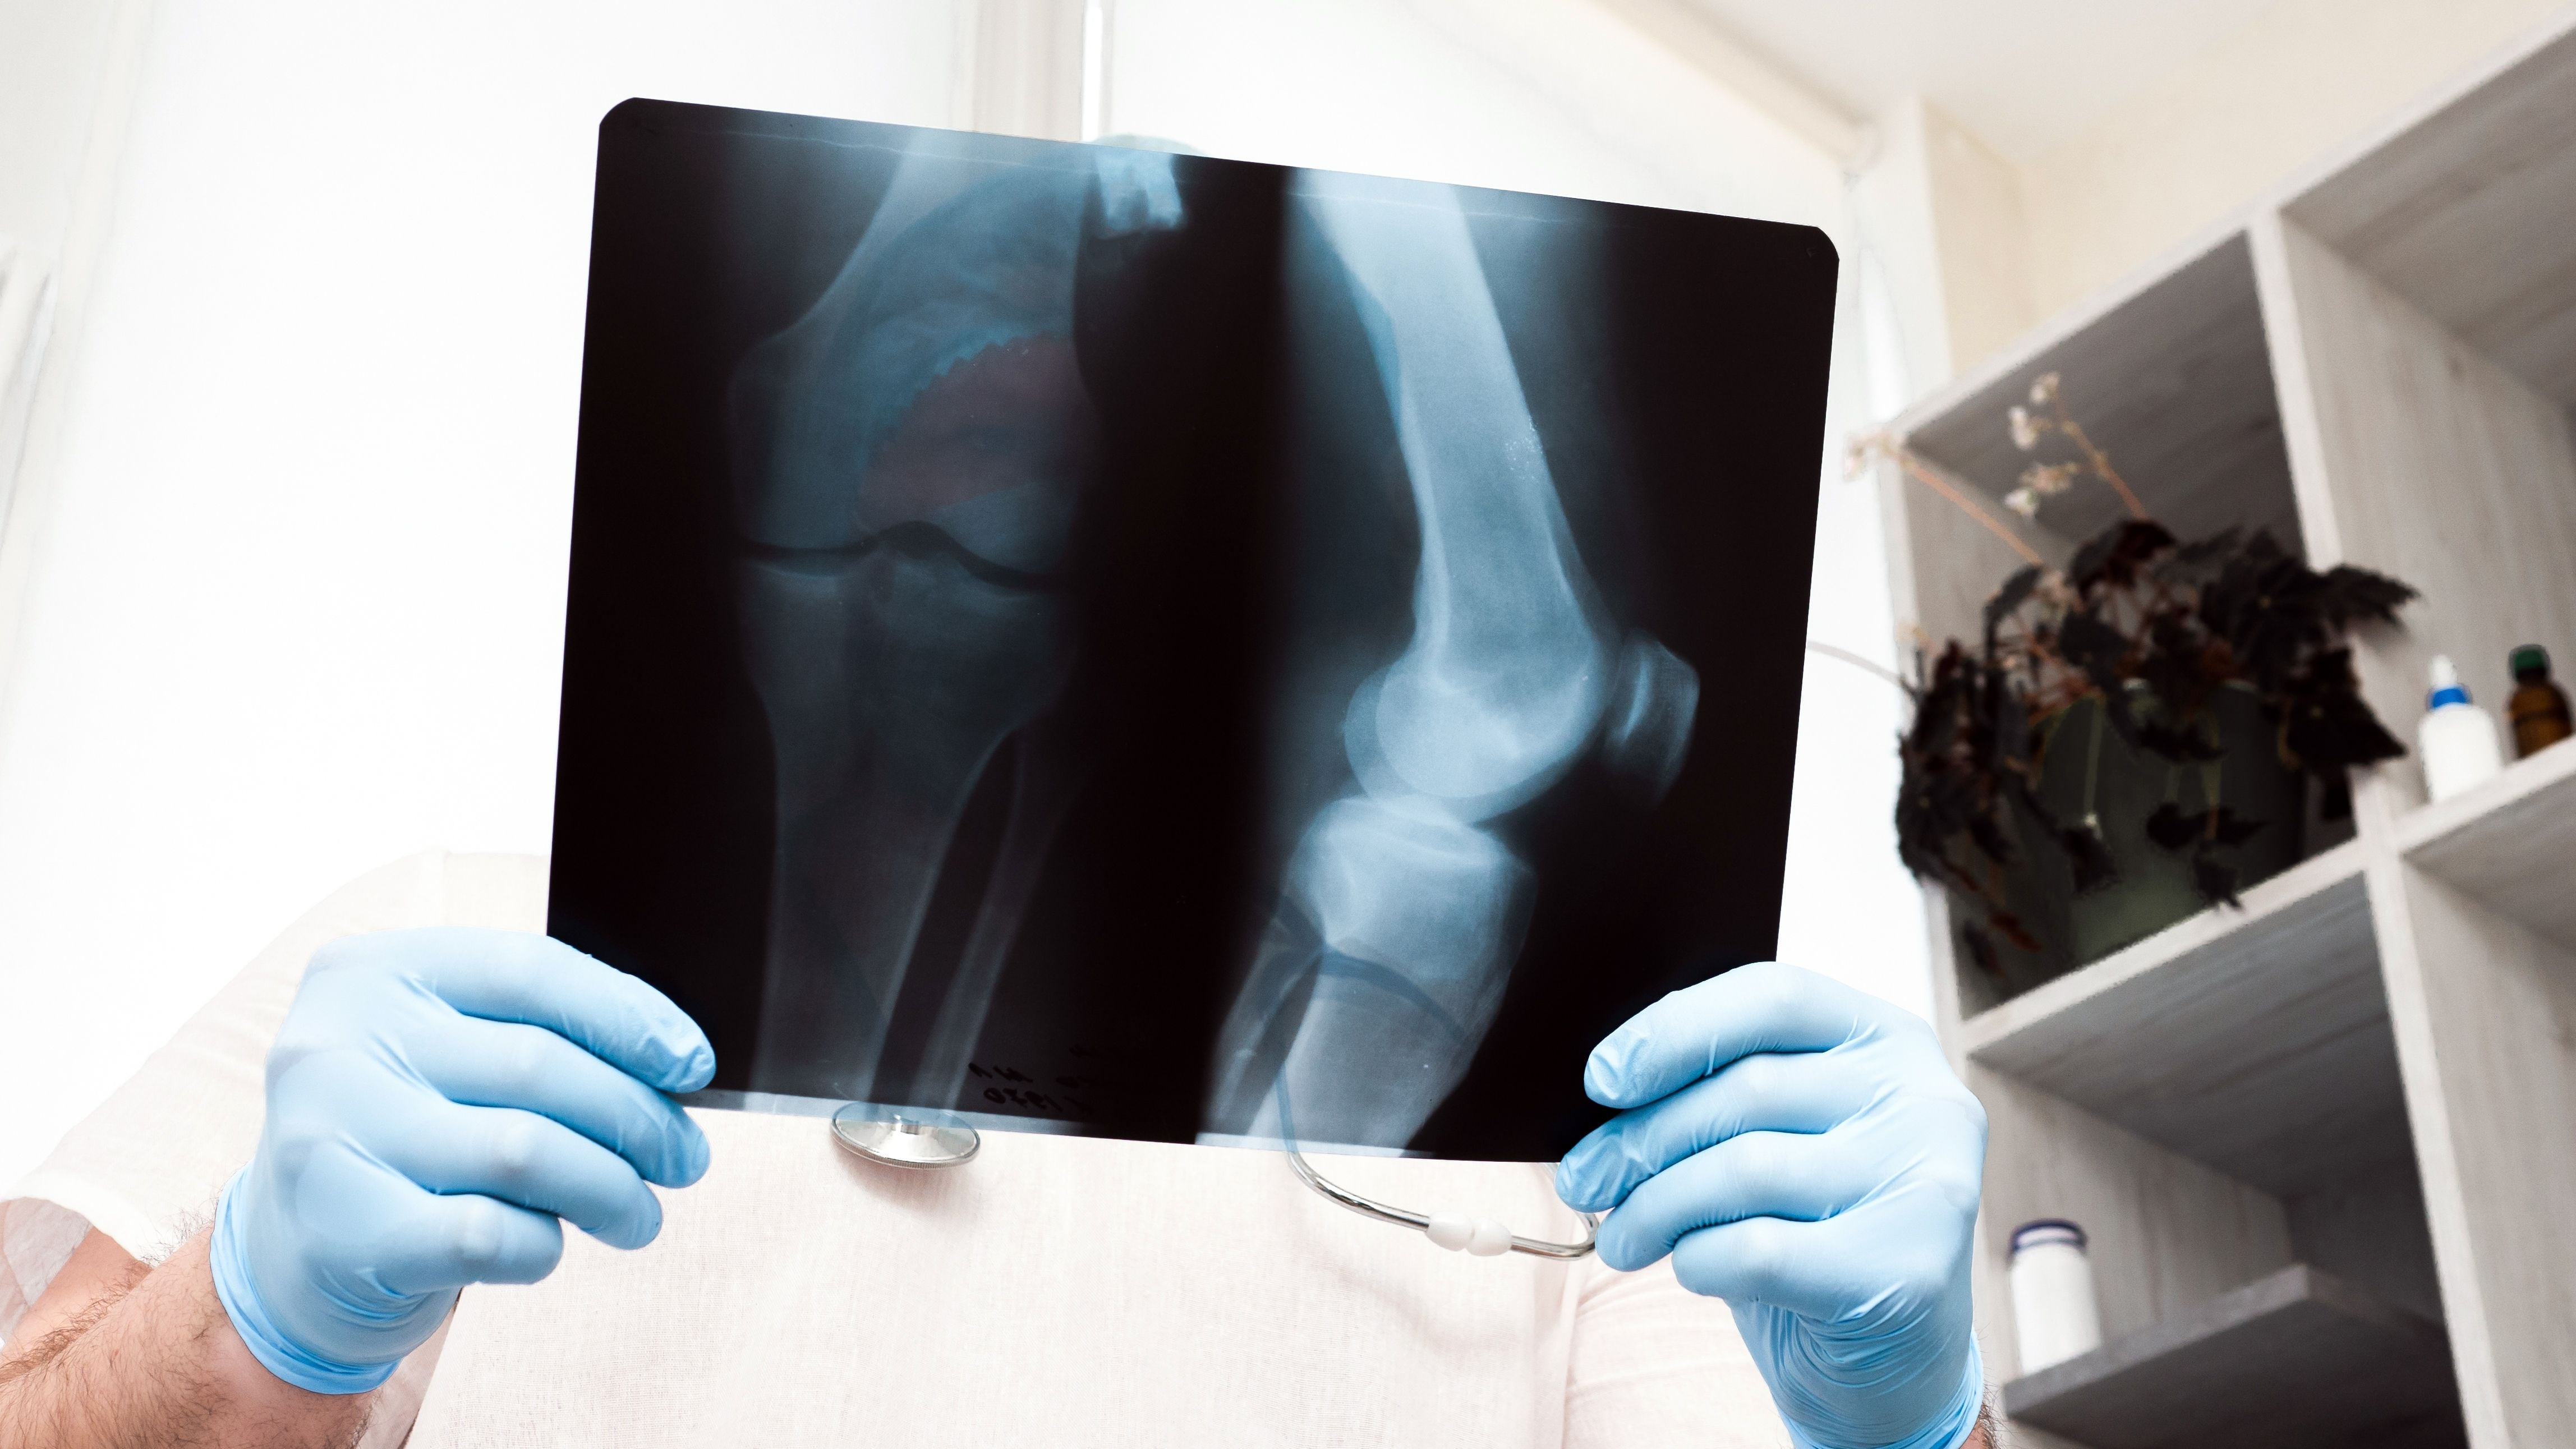 Traumatólogo observa unos rayos X (Shutterstock)